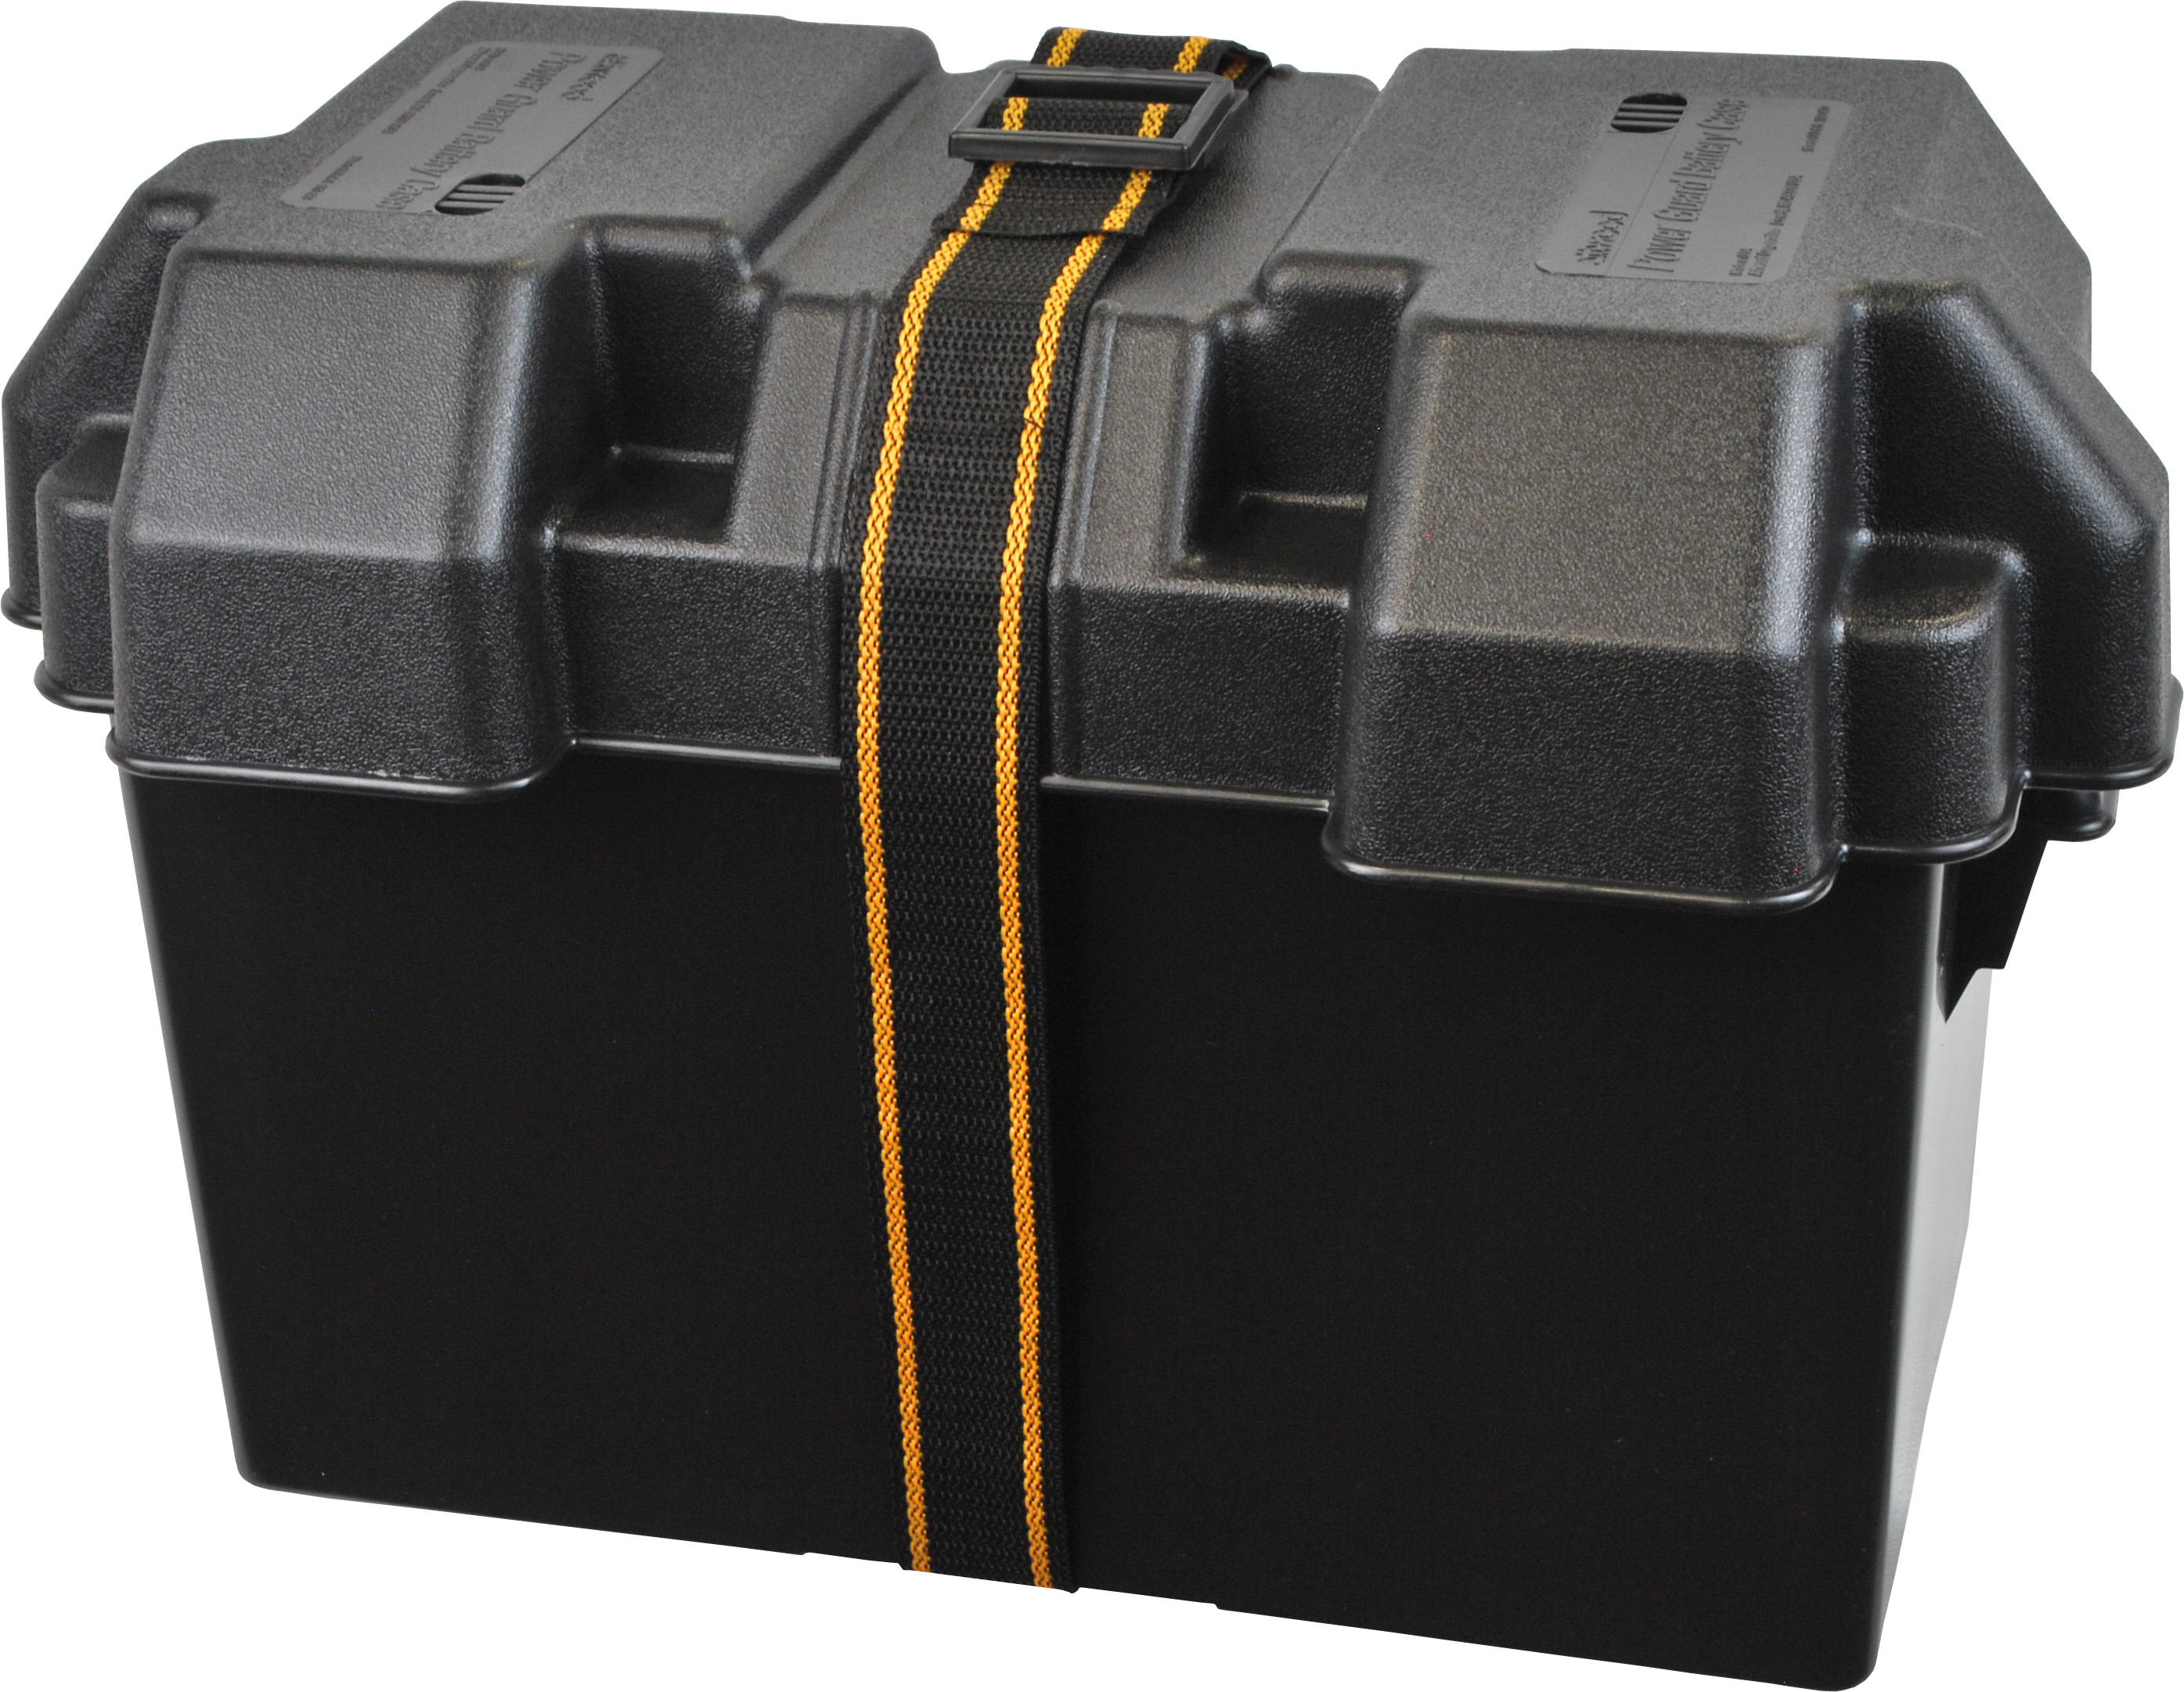 Battery box. Attwood Power Guard 27 352х184х266 мм (9067-1). Бокс для аккумулятора Attwood Power Guard 27 10010194. Бокс для АКБ 2х40ач. Бокс для аккумулятора Easterner 280х196х200 мм c11526.